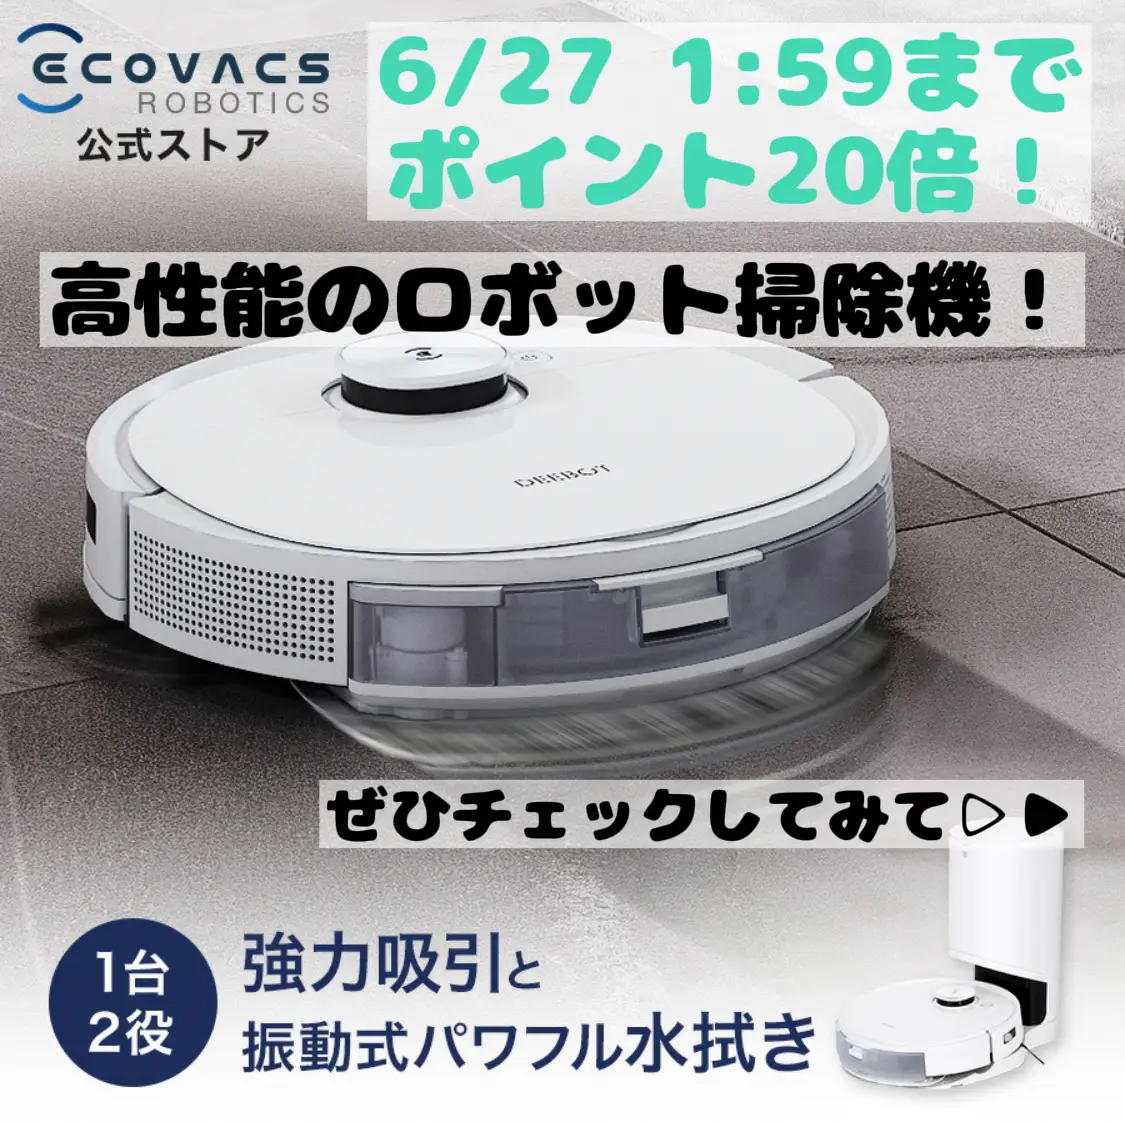 【送料込み】take one x1pro ロボット掃除機水拭き 掃除機両対応 掃除機